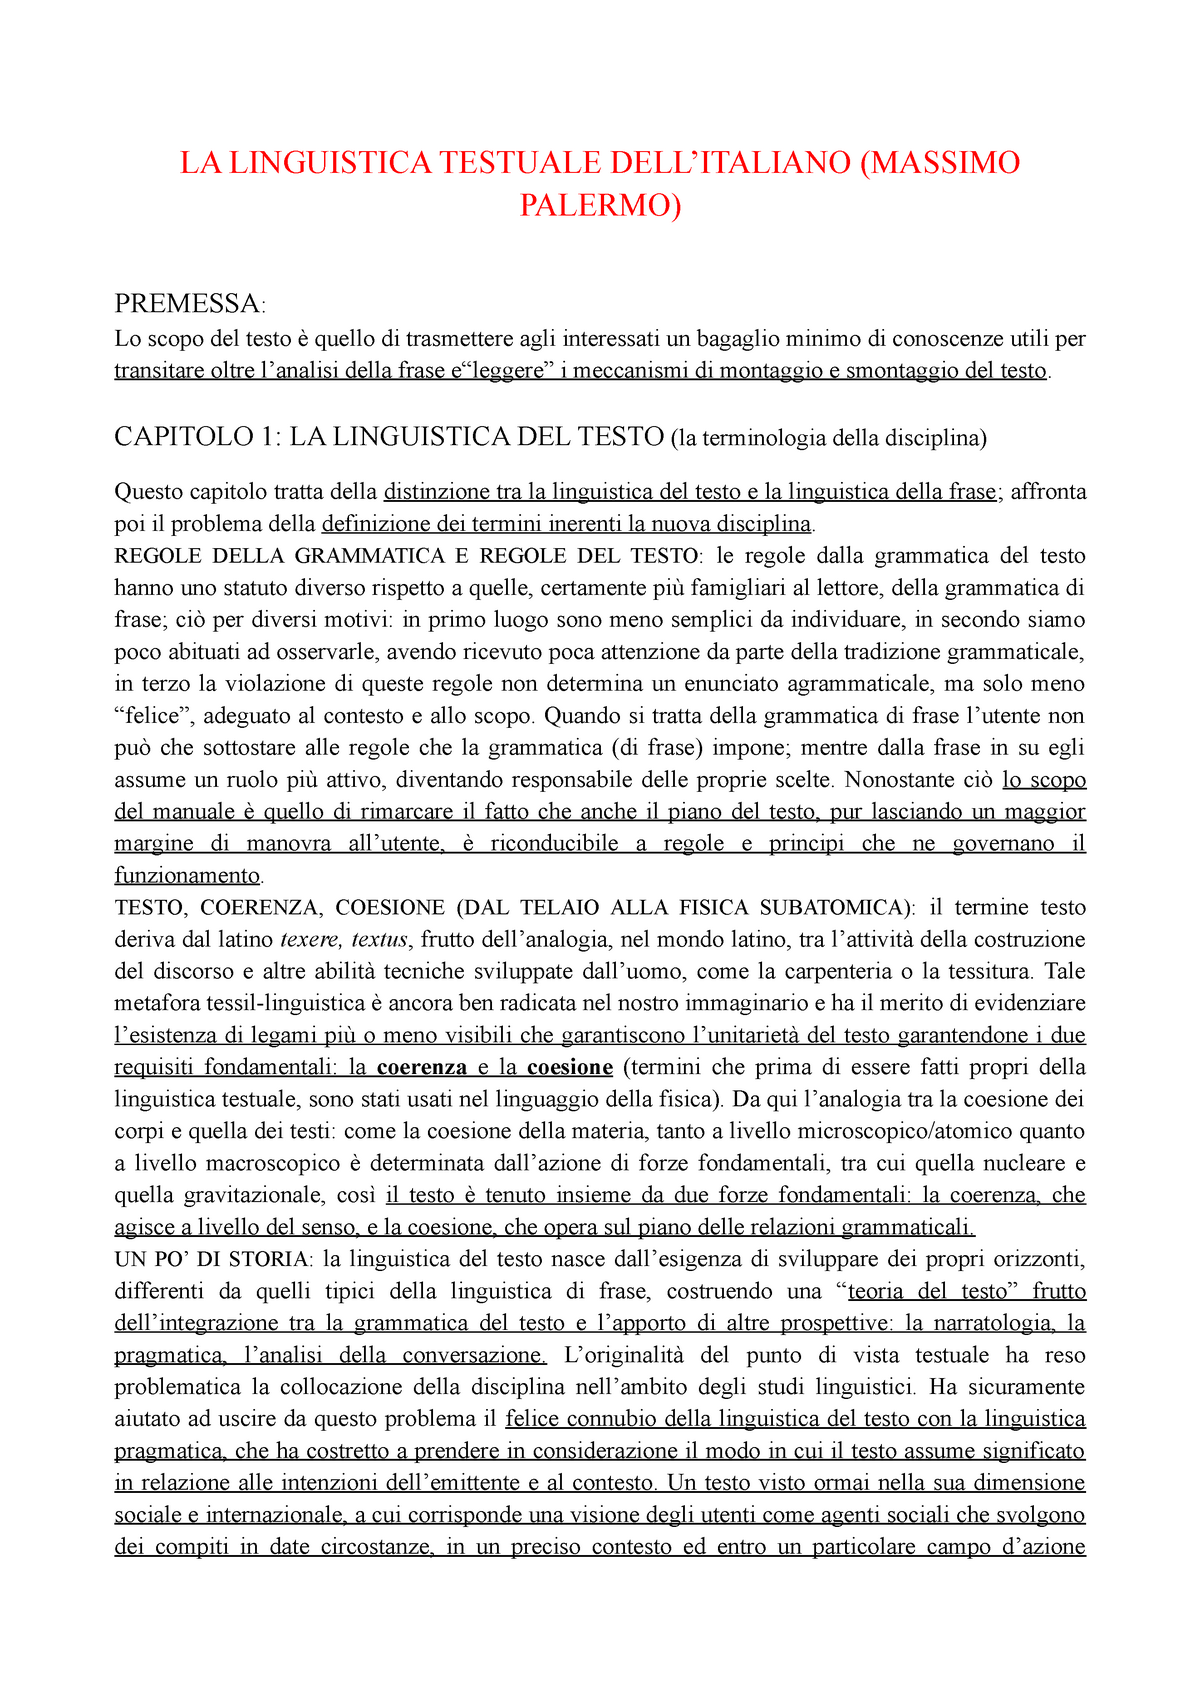 La Linguistica Testuale Dell Italiano Di Massimo Palermo La Linguistica Testuale Dellitaliano 8523